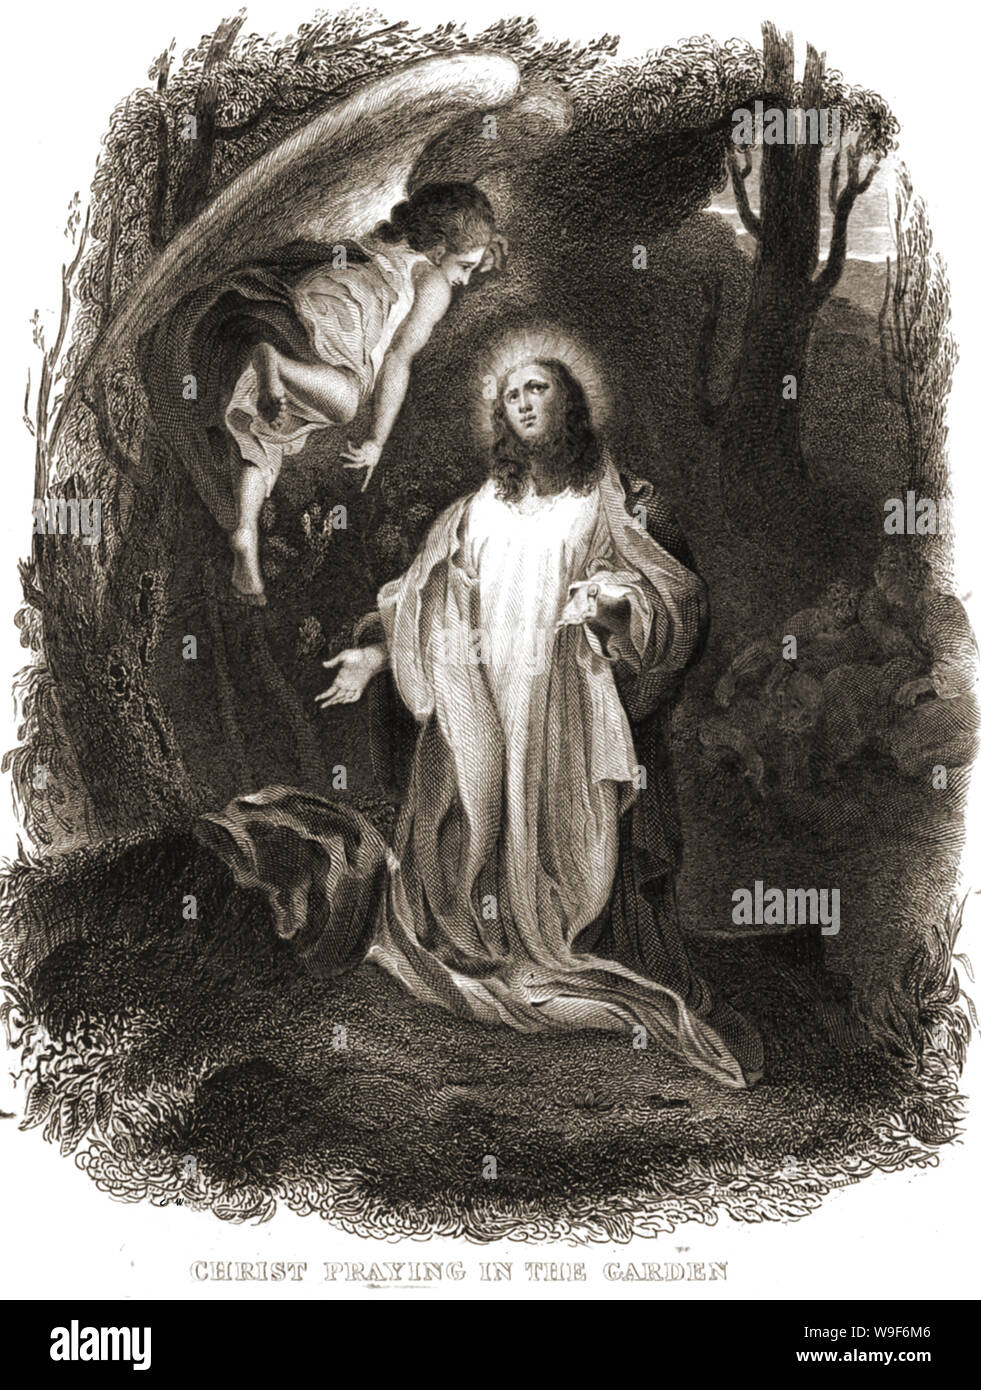 Il cristianesimo / Religione - 1844 Illustrazione dal marrone della Bibbia che mostra Gesù Cristo pregando nel giardino con un angelo volteggia sopra di lui. (L'agonia nel giardino del Getsemani) Foto Stock